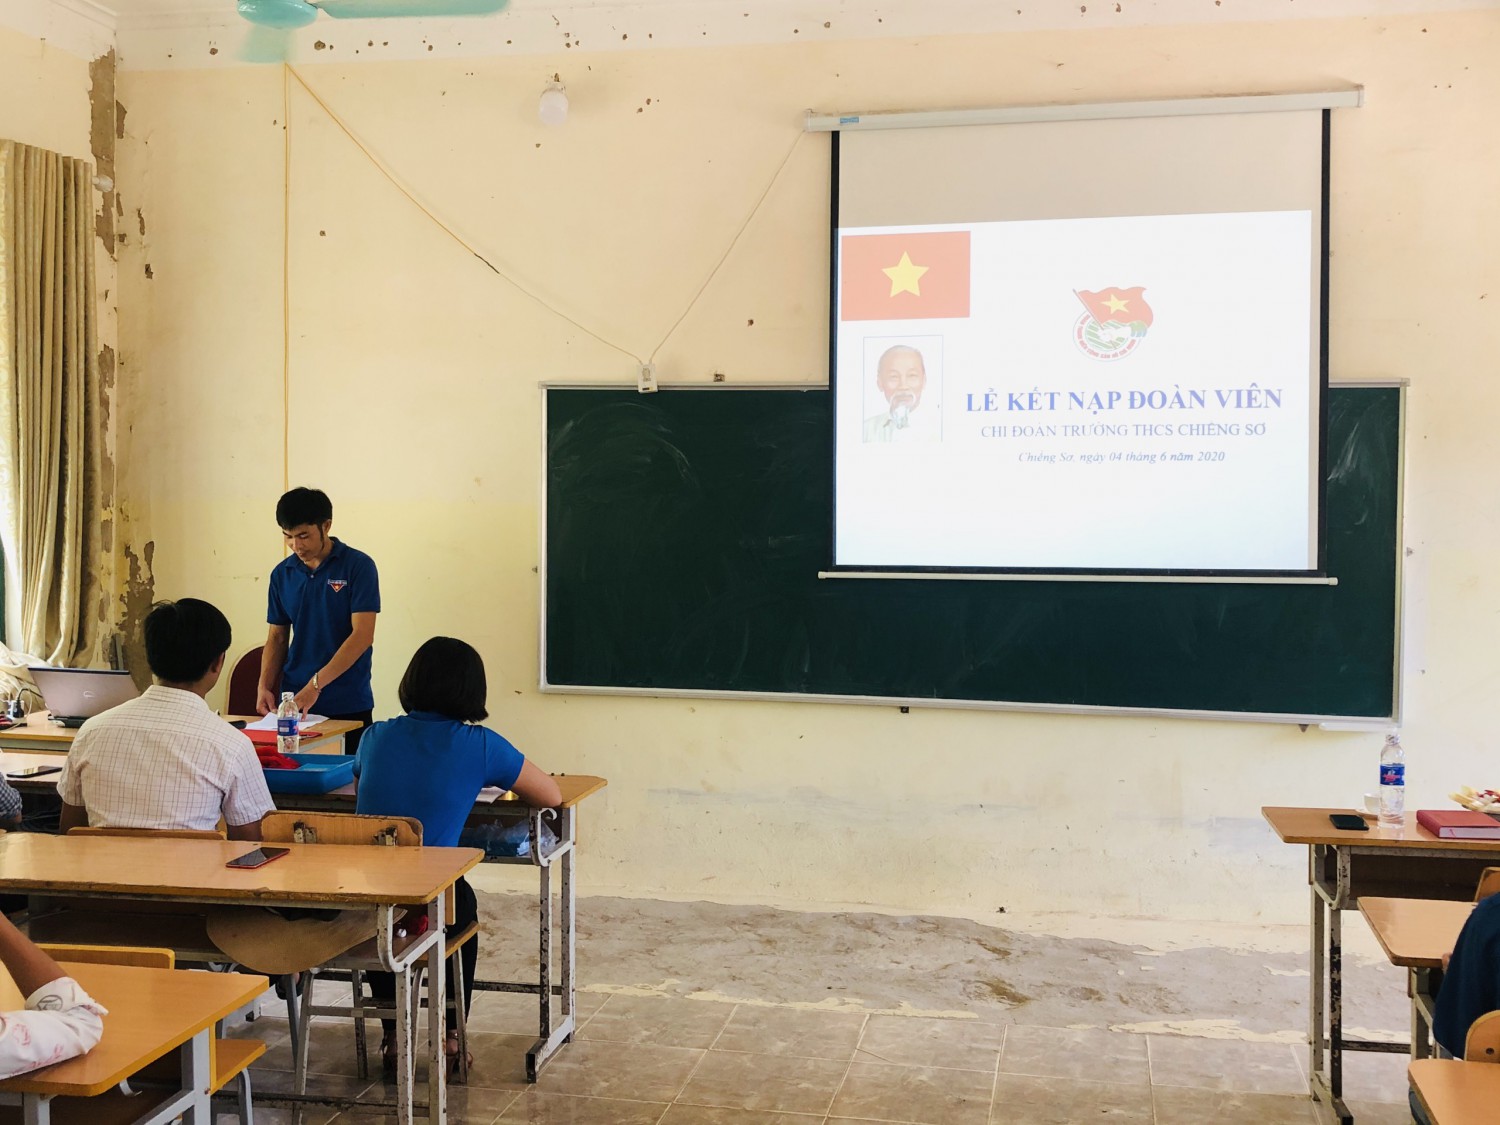 Đồng chí: Lò Văn Thuấn bí thư đoàn xã đọc quyết định chuẩn y kết nạp đoàn